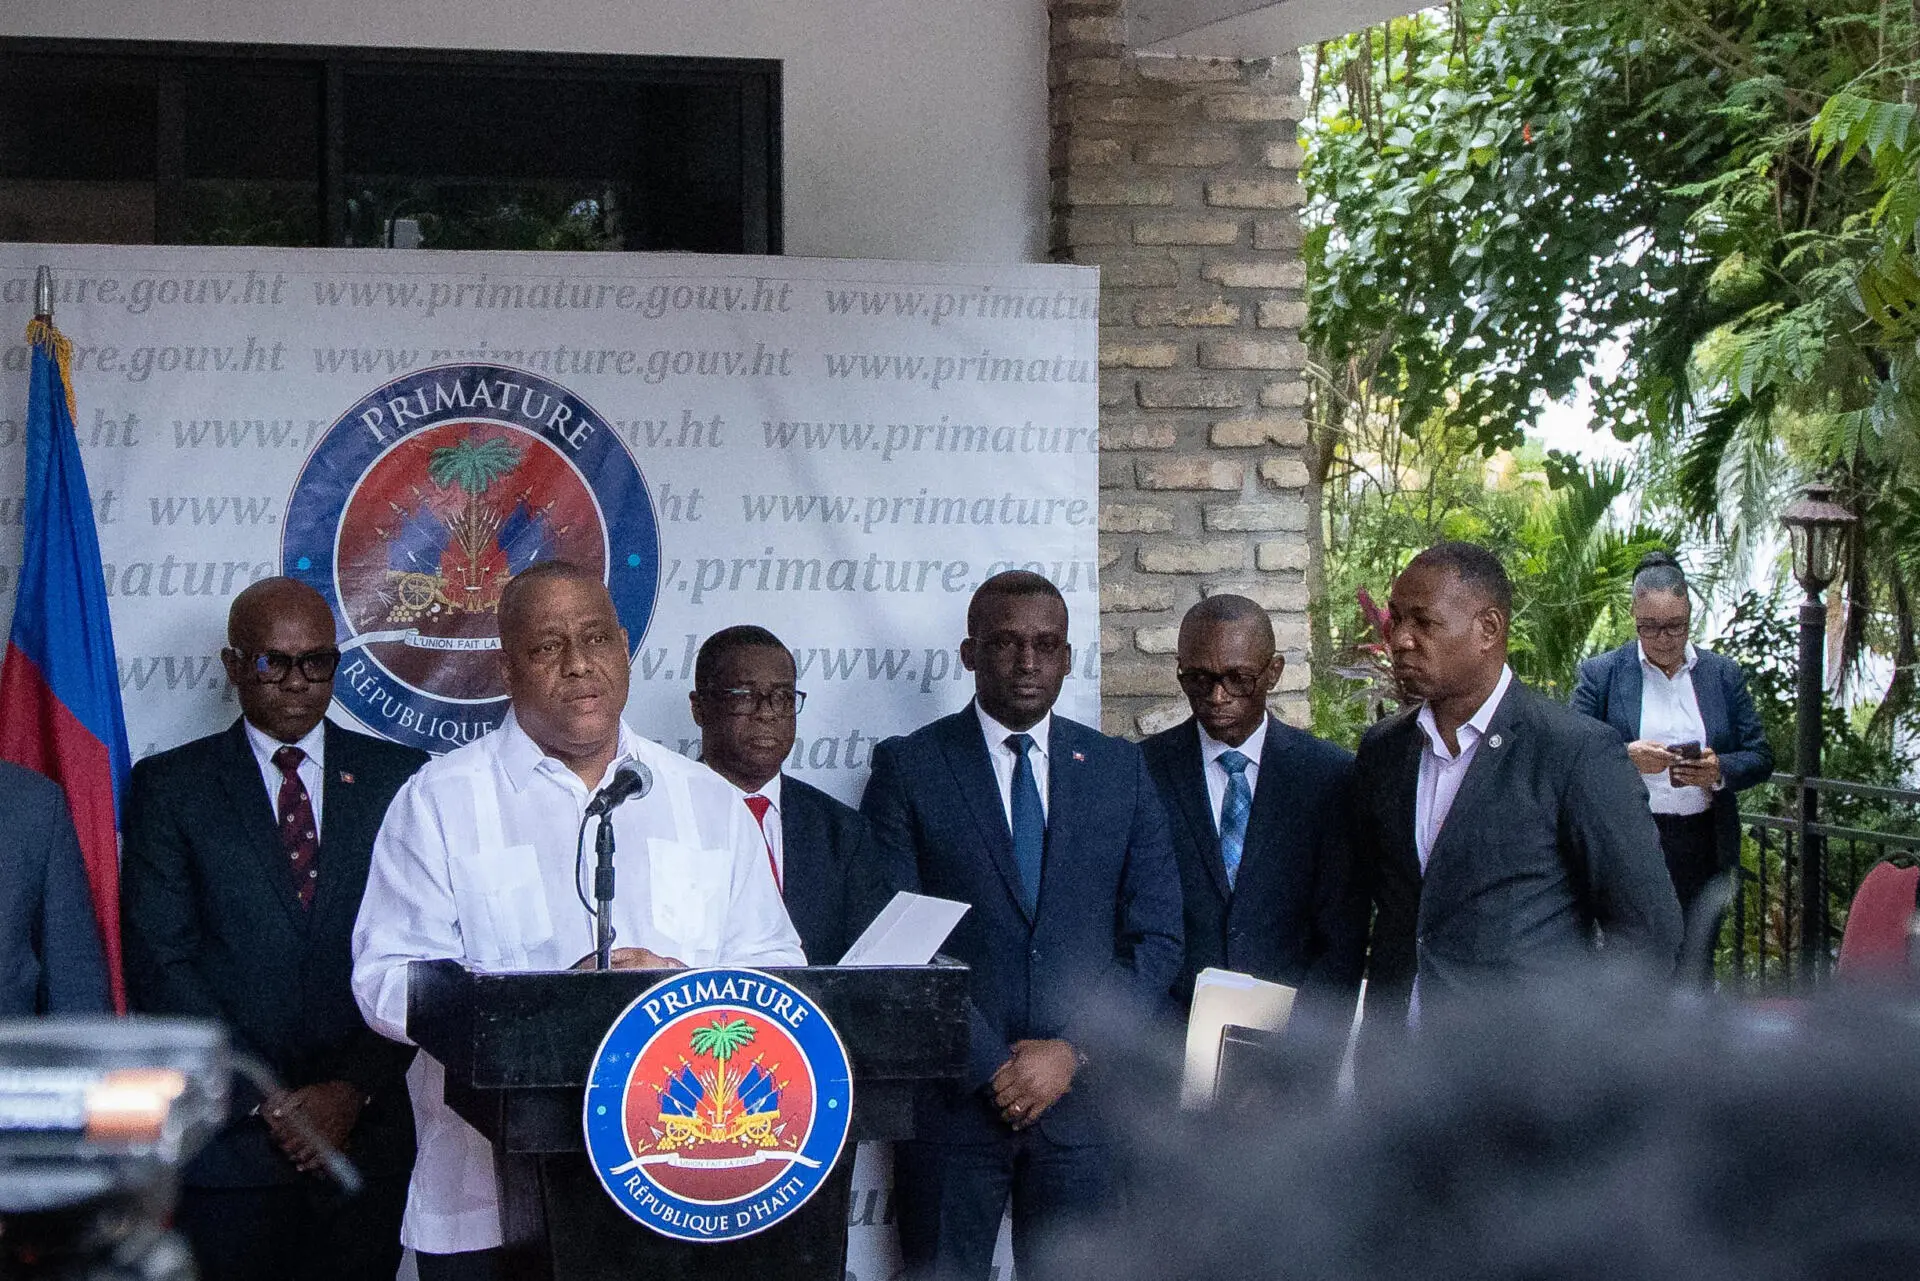 El primer ministro de Haití se compromete a luchar contra la falta de transparencia y corrupción estatal